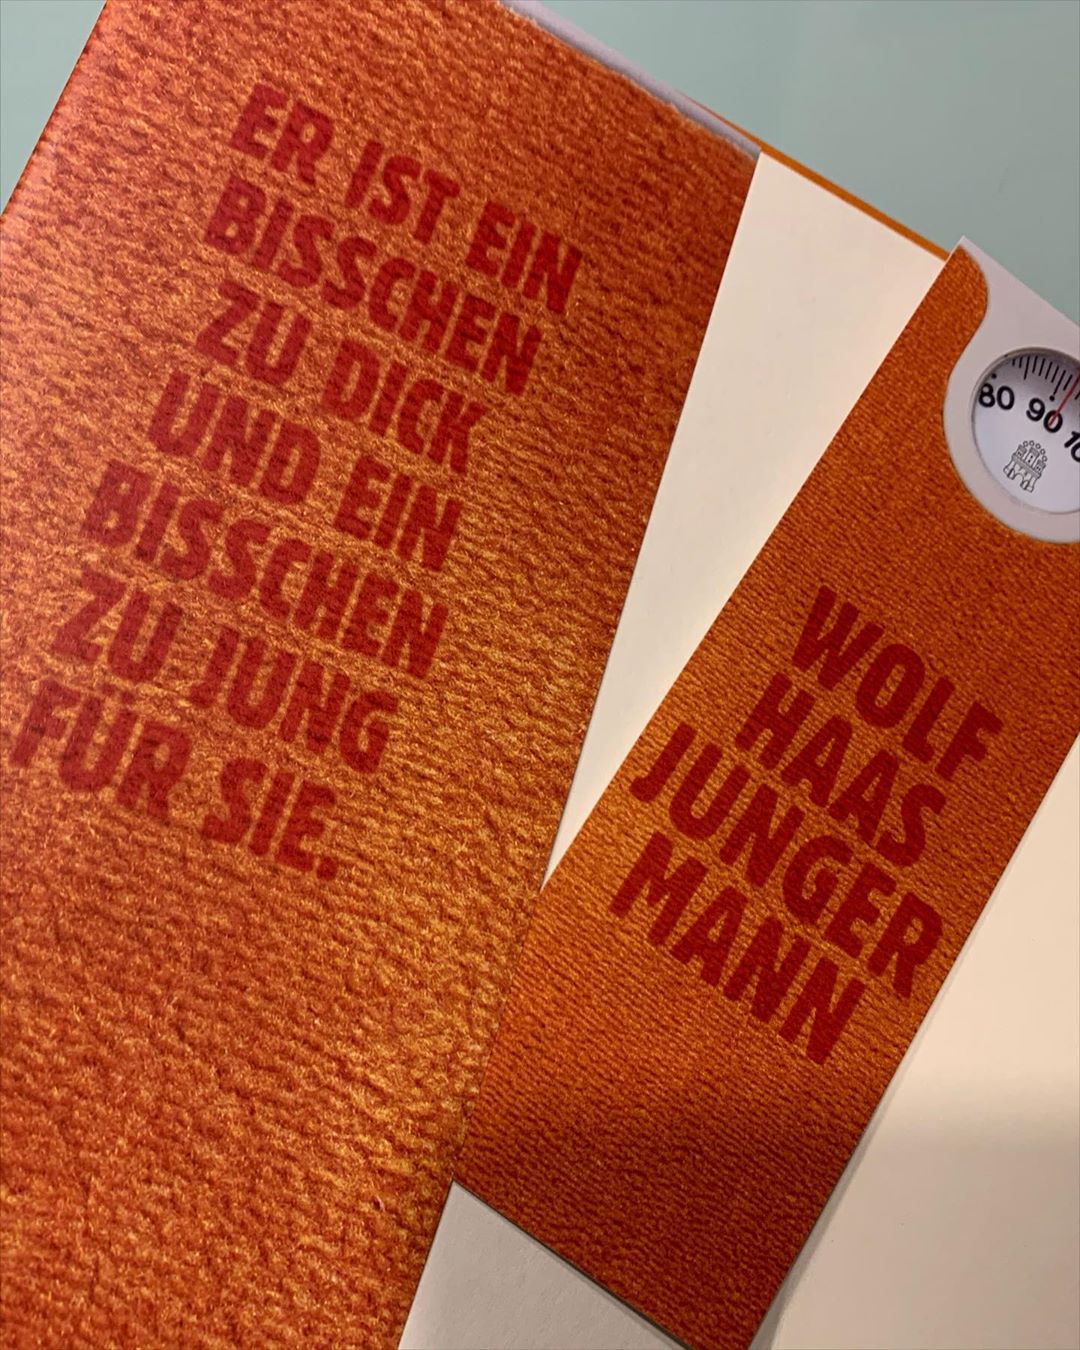 Ich glaube meine Frau will mir mit diesem Buch etwas sagen 🤔 #wolfhaas #lesestoff